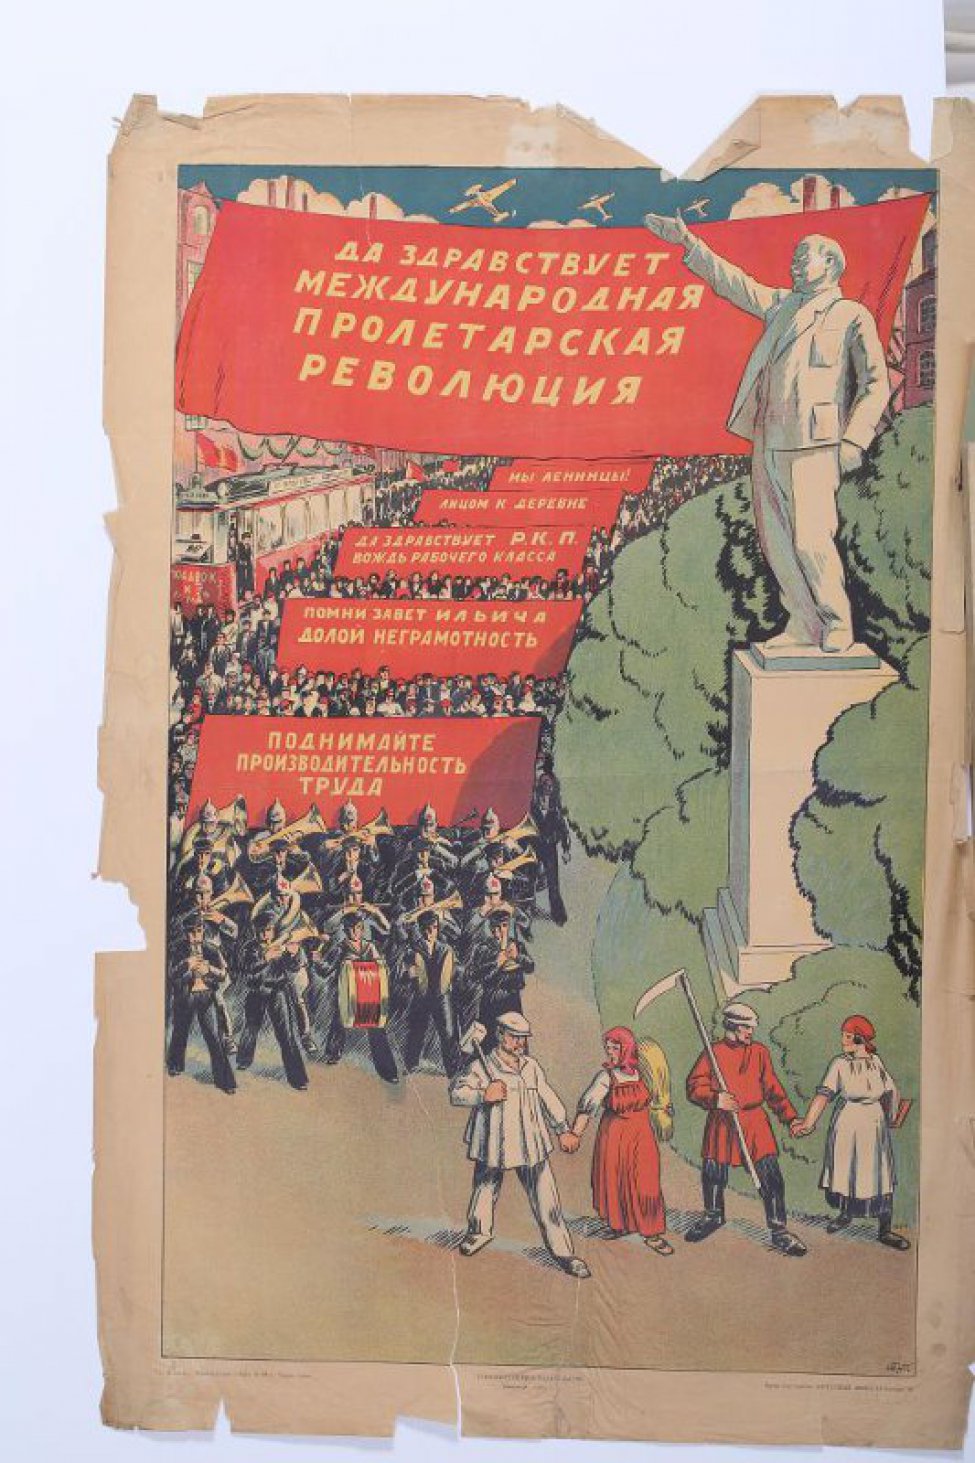 Изображен справа Ленин на пьедестале, с вытянутой вперед рукой. Слева на улице толпа демонстрантов со знаменами- на которых лозунги:" Поднимайте производительность труда". Ниже идут рука об руку, рабочий, крестьянка, крестьянин и т.д.